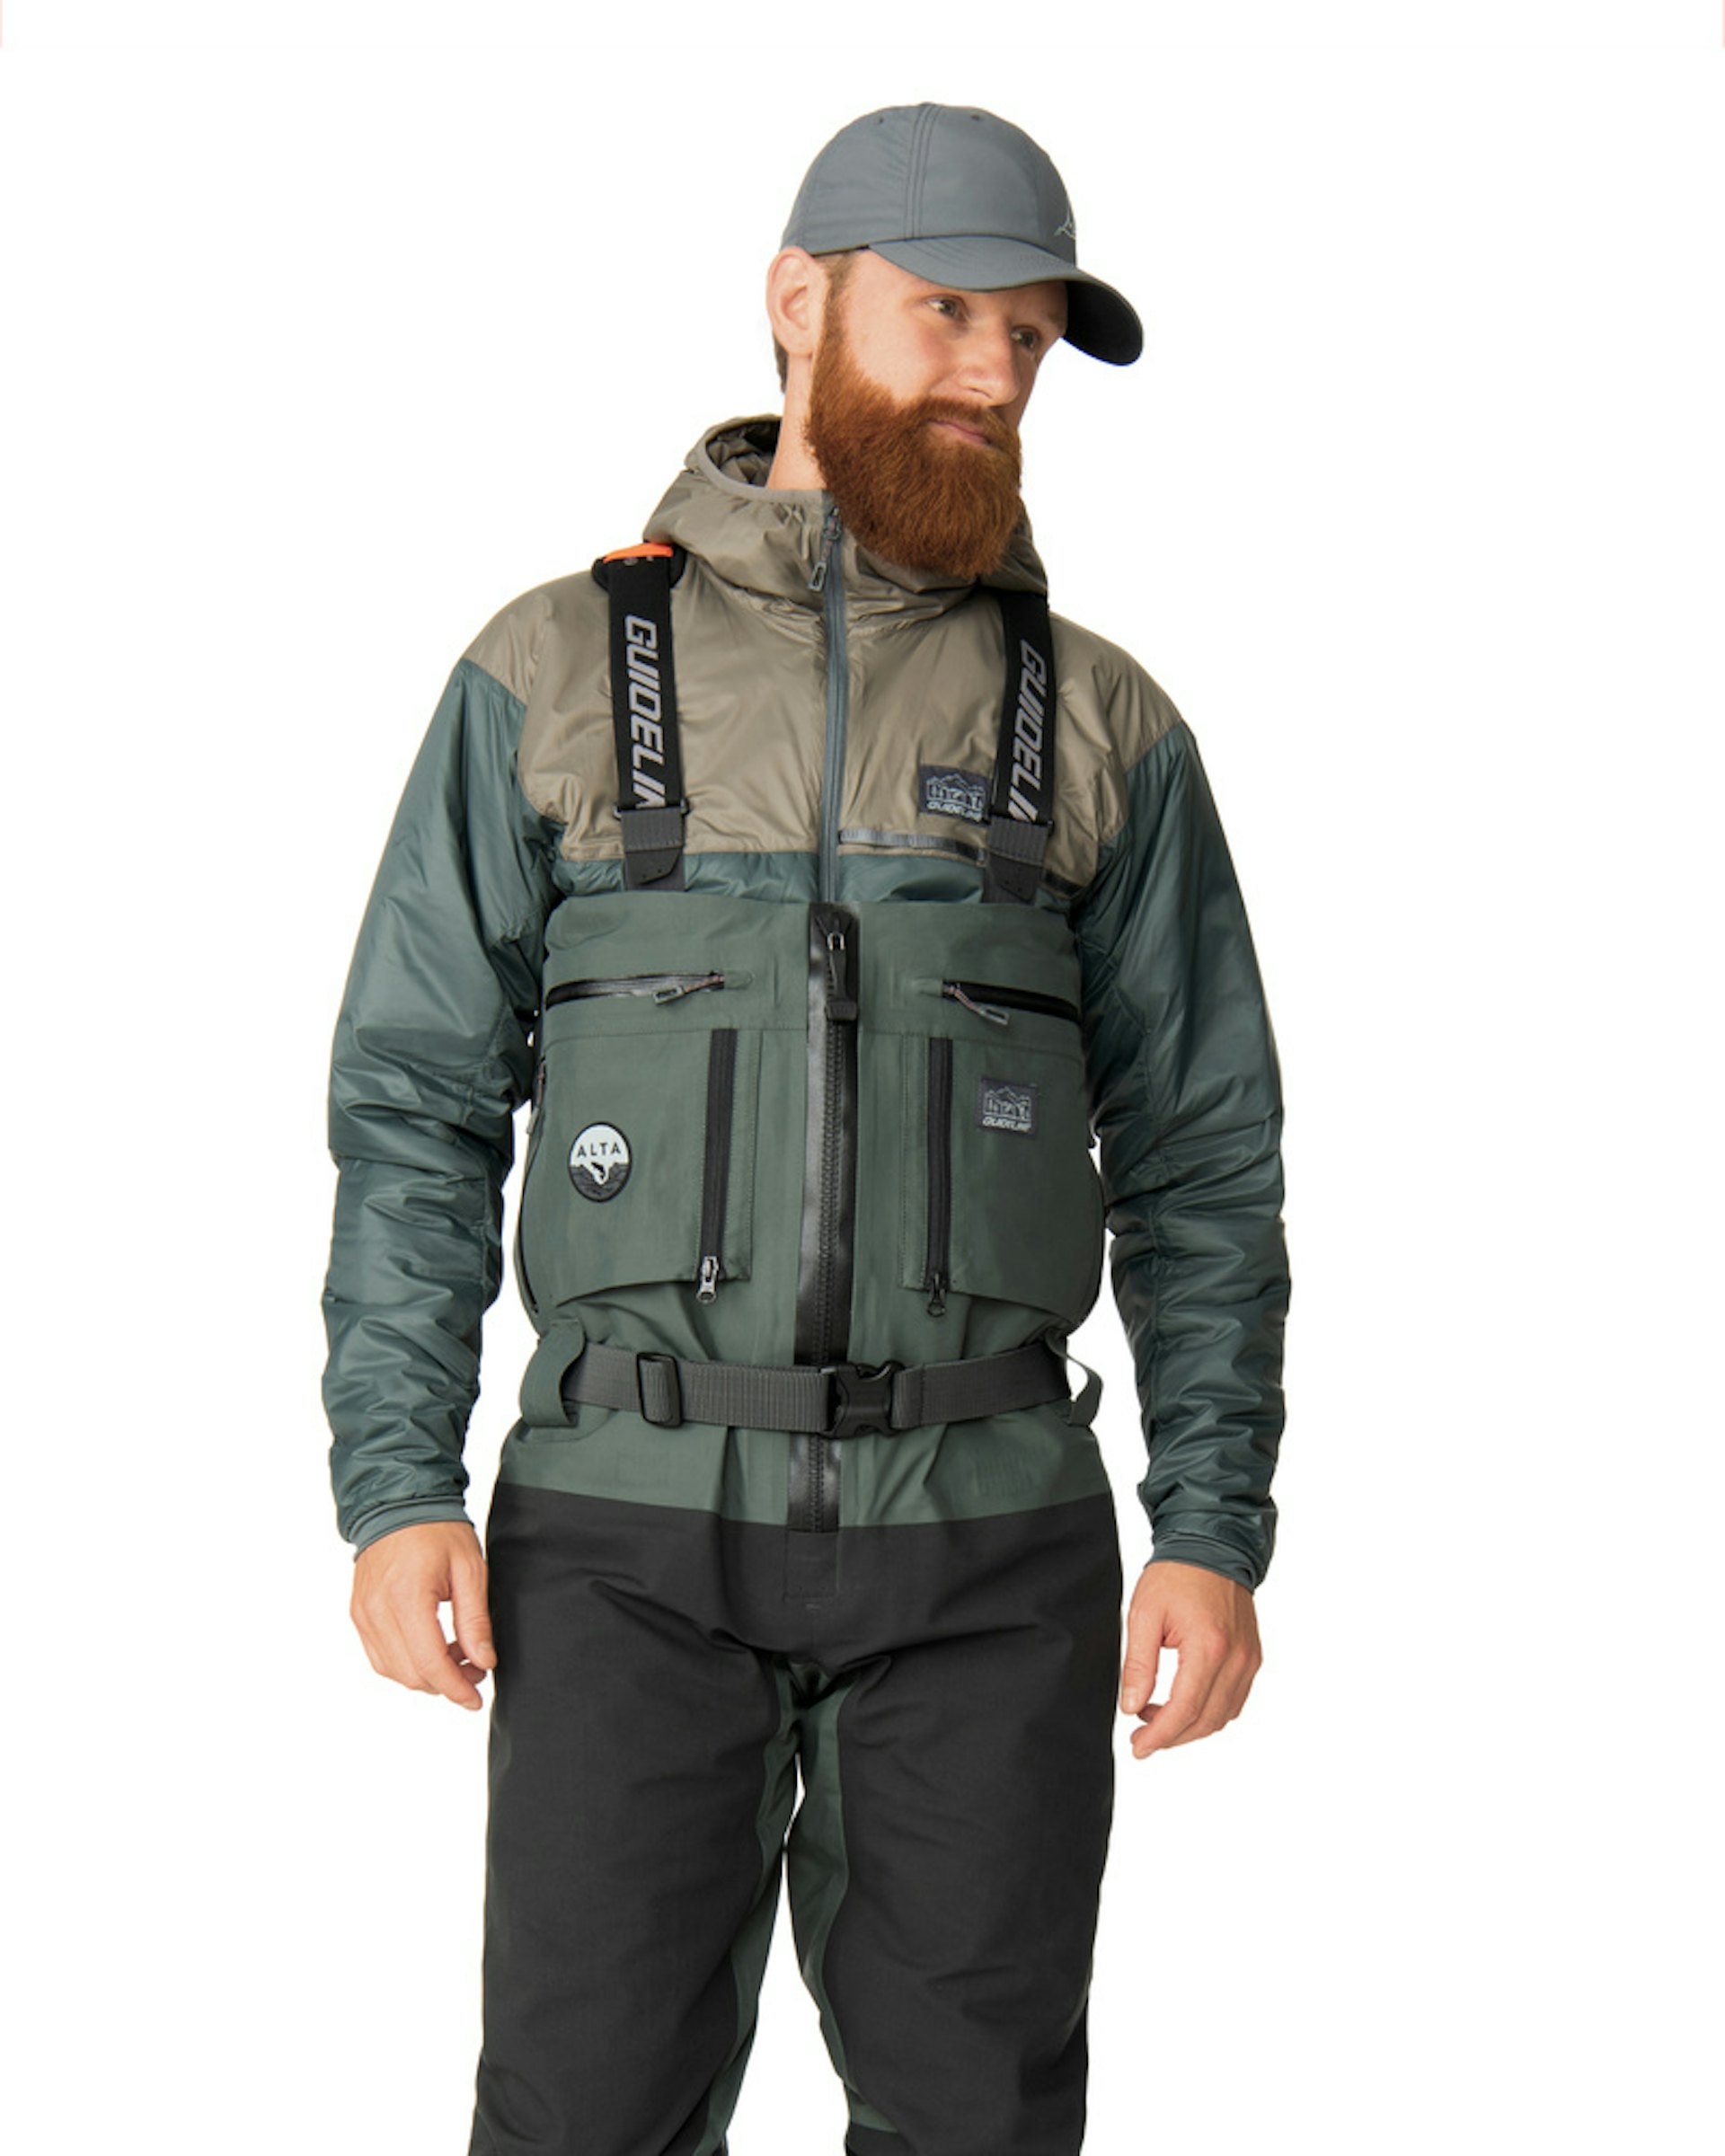 UNISPO Fly Fishing Waders-size S Unisex Adult Small Fishing Jacket